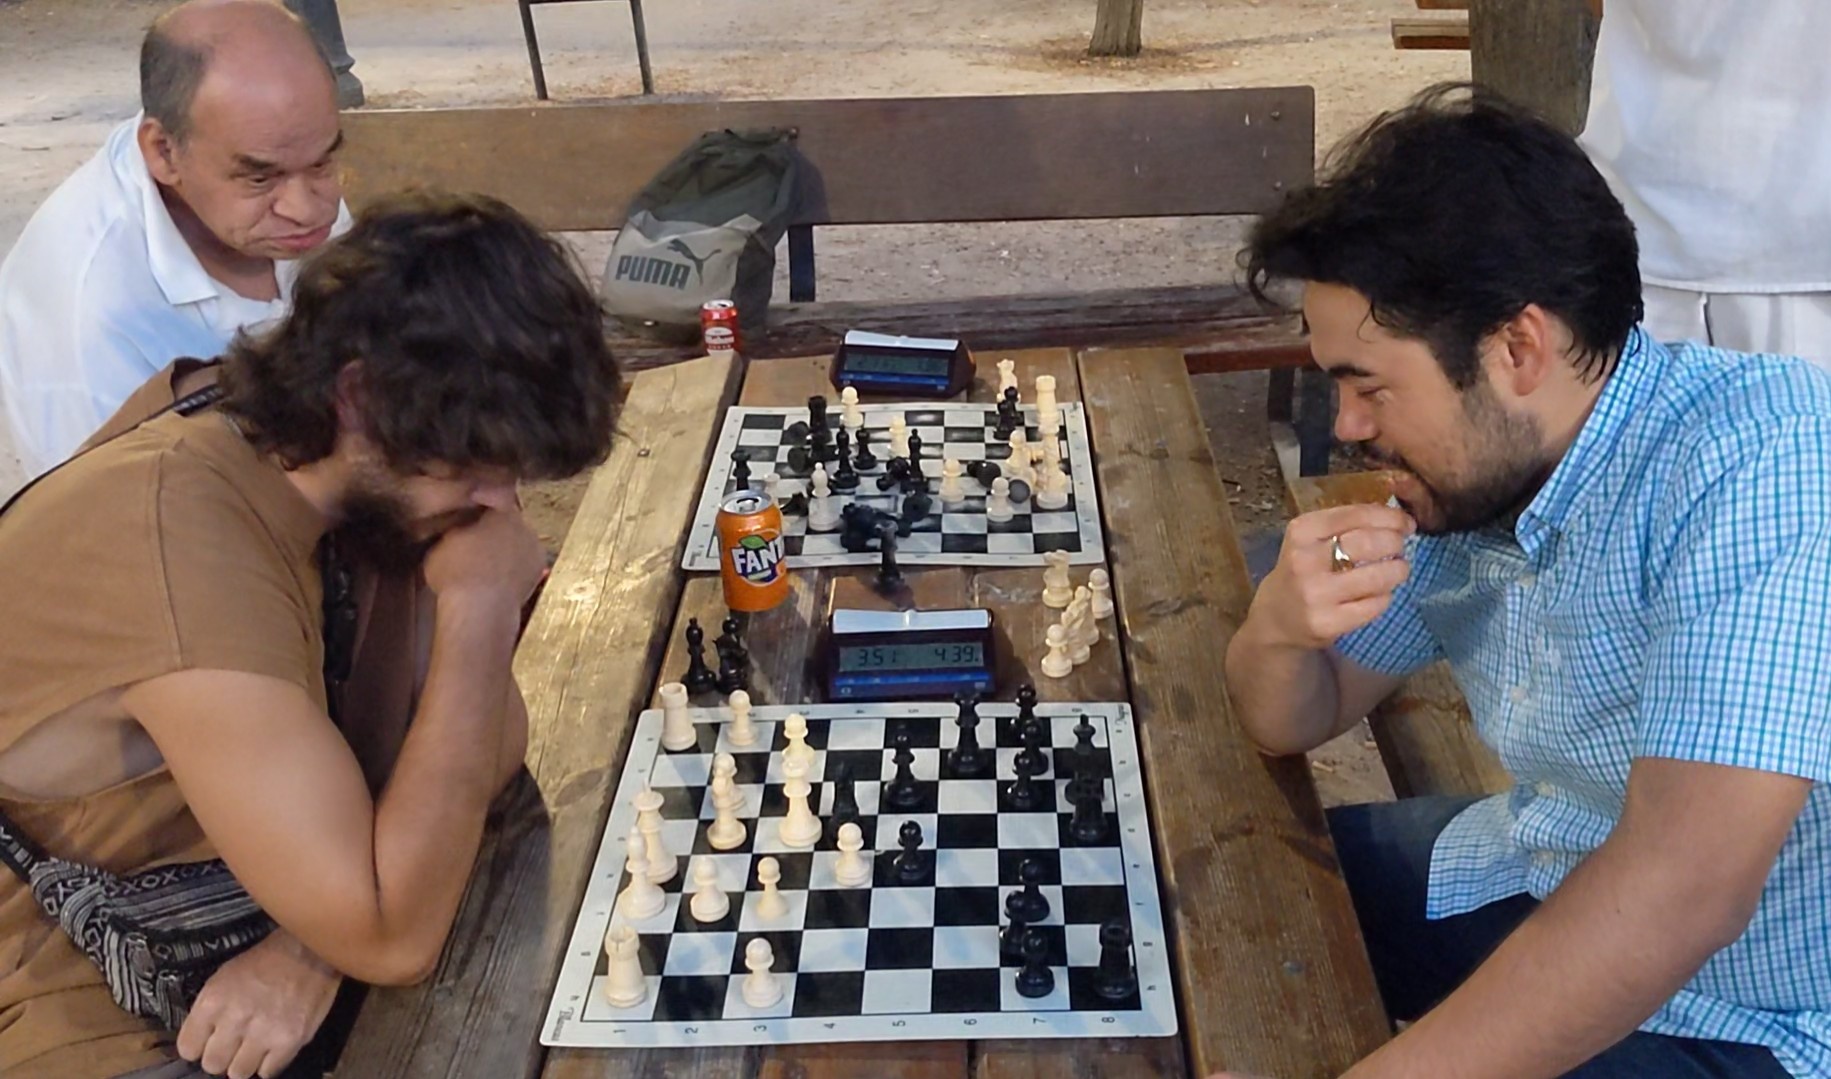 Messi and ronaldo playing chess - Playground